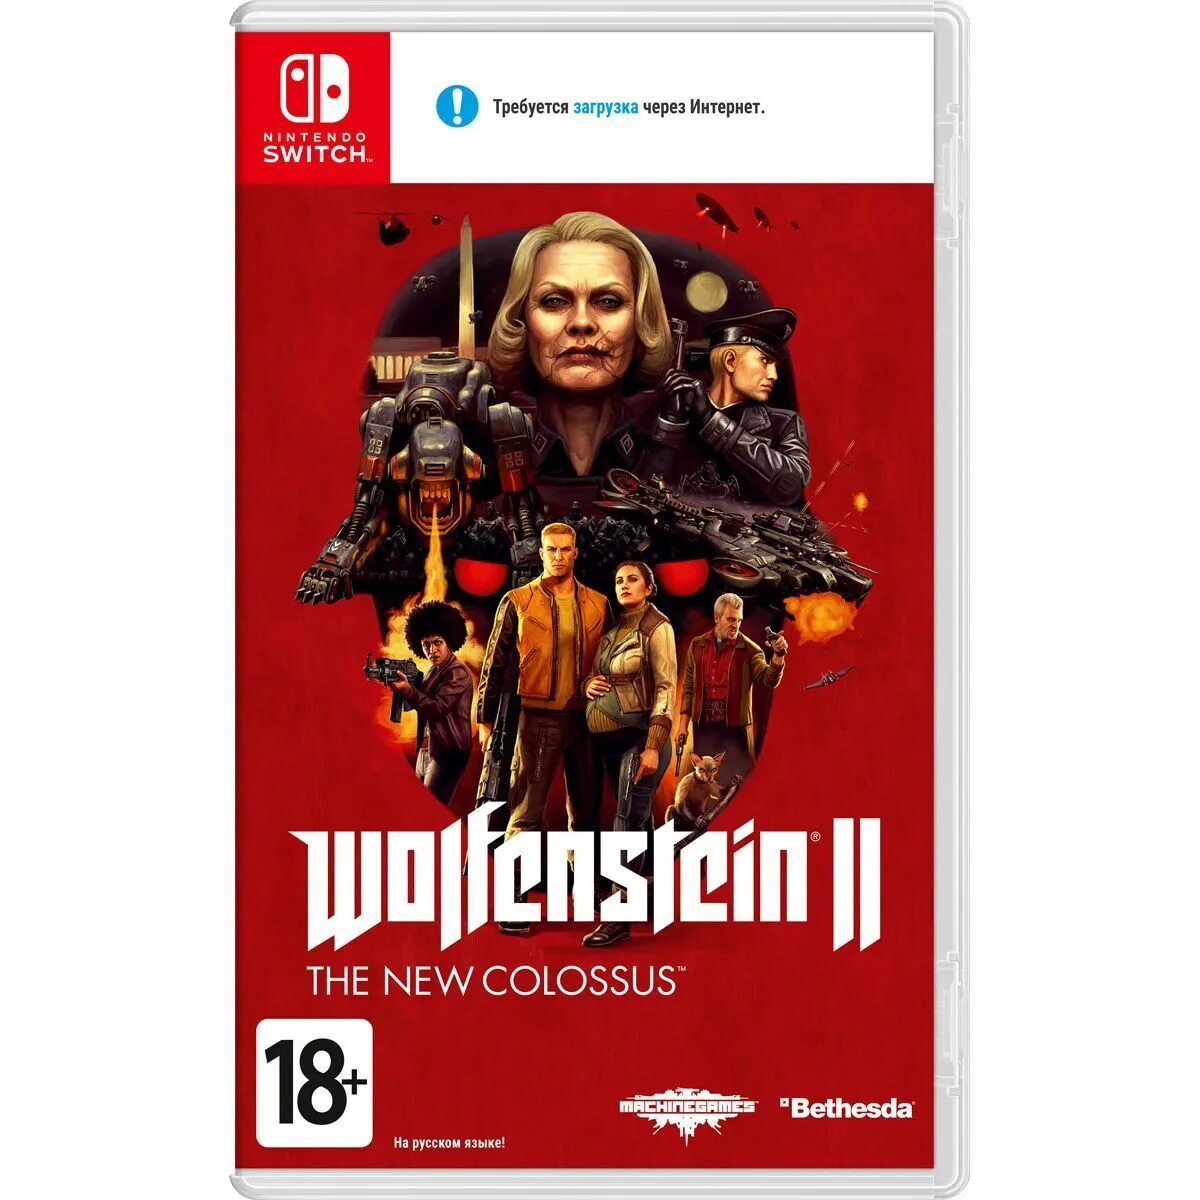 Wolfenstein 2 Nintendo Switch. Wolfenstein II: the New Colossus Nintendo Switch. Вольфенштайн 2 Нинтендо свитч. Wolfenstein II: the New Colossus на Нинтендо.